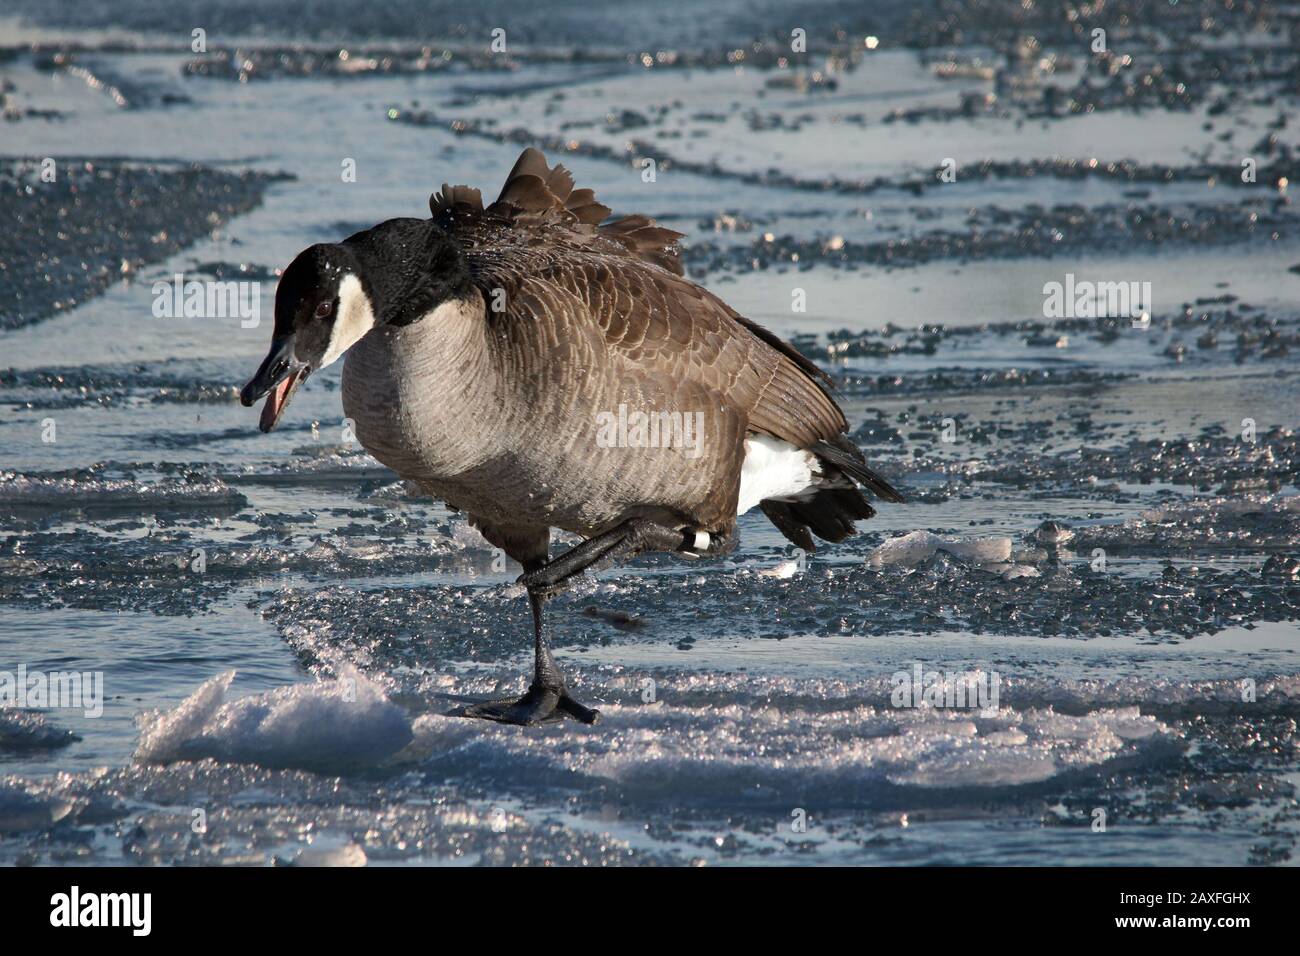 Canada Geese at Lake Stock Photo